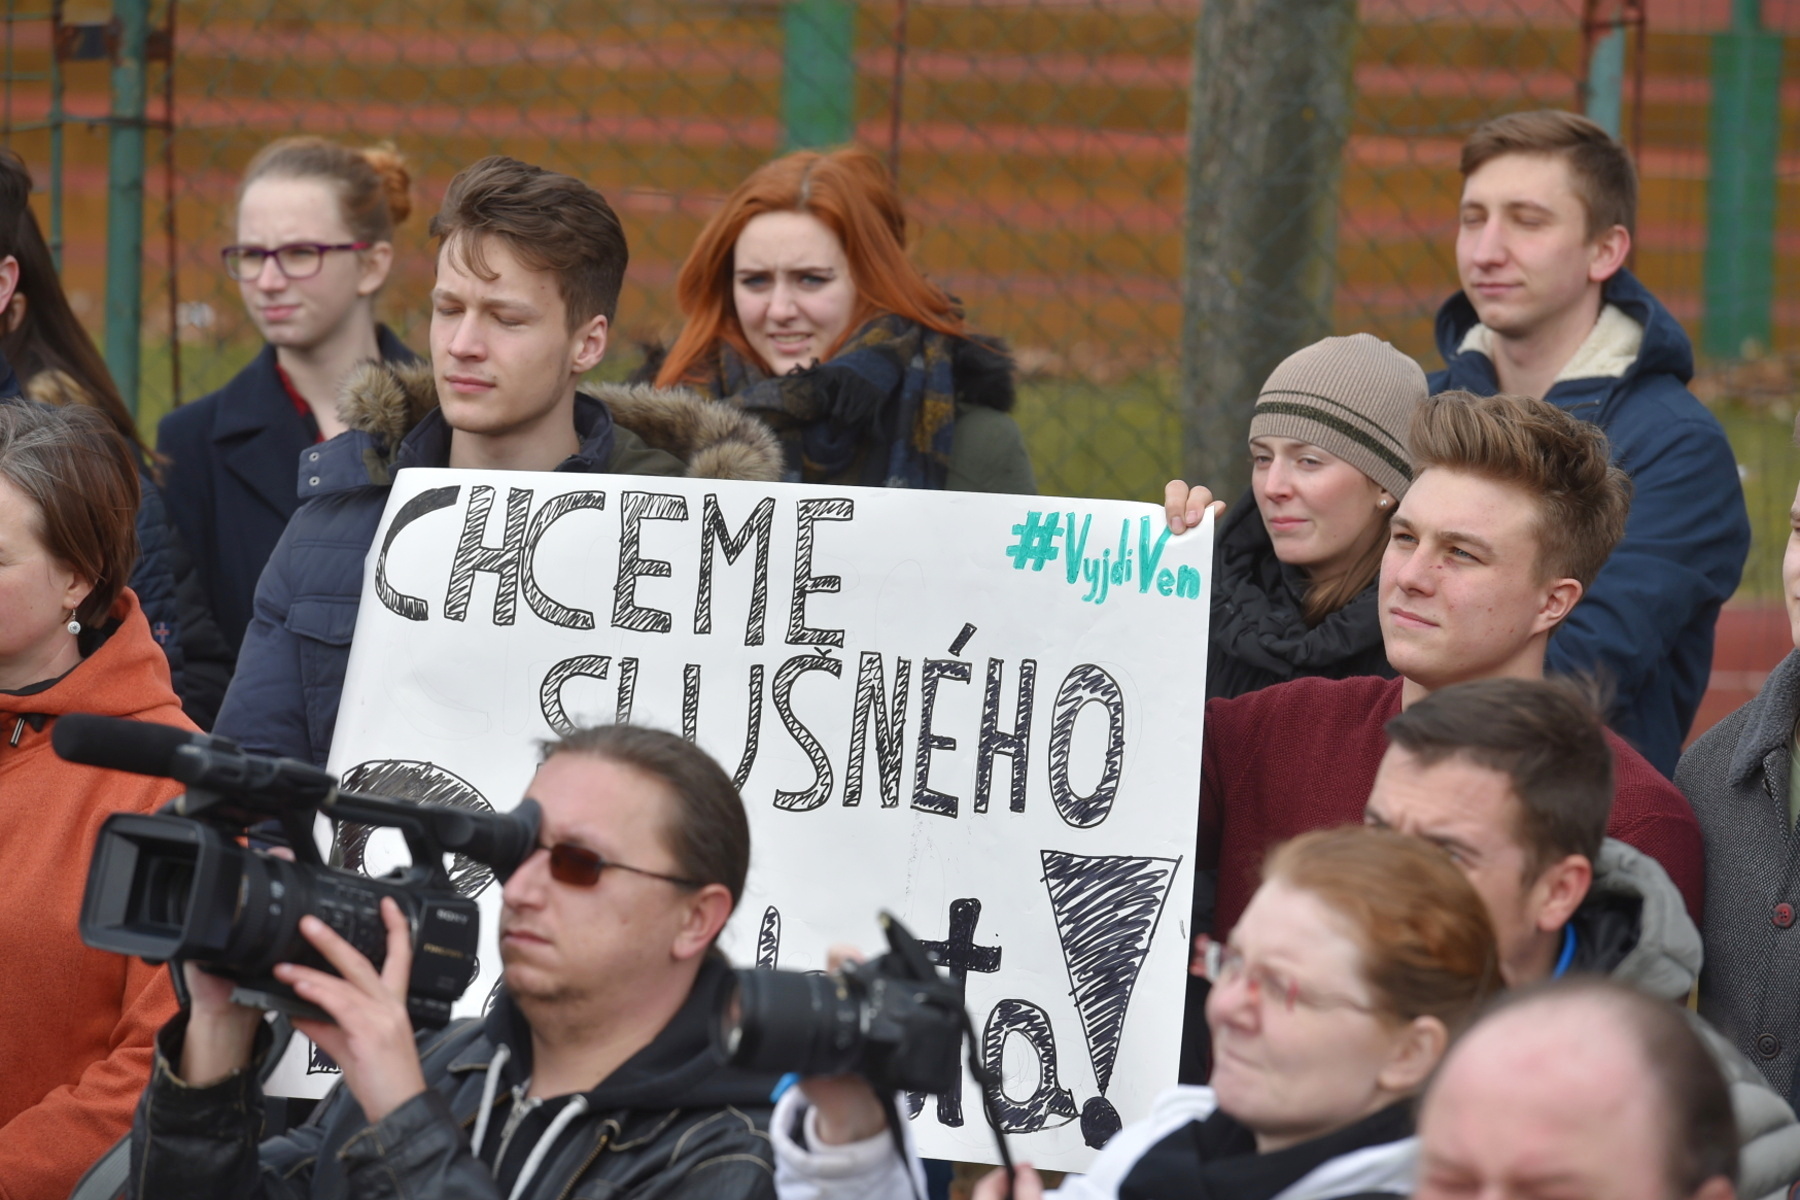 Studenti Prvního českého gymnázia v Karlových Varech se připojili k celostátní protestní akci studentů Vyjdi ven na obranu ústavních hodnot